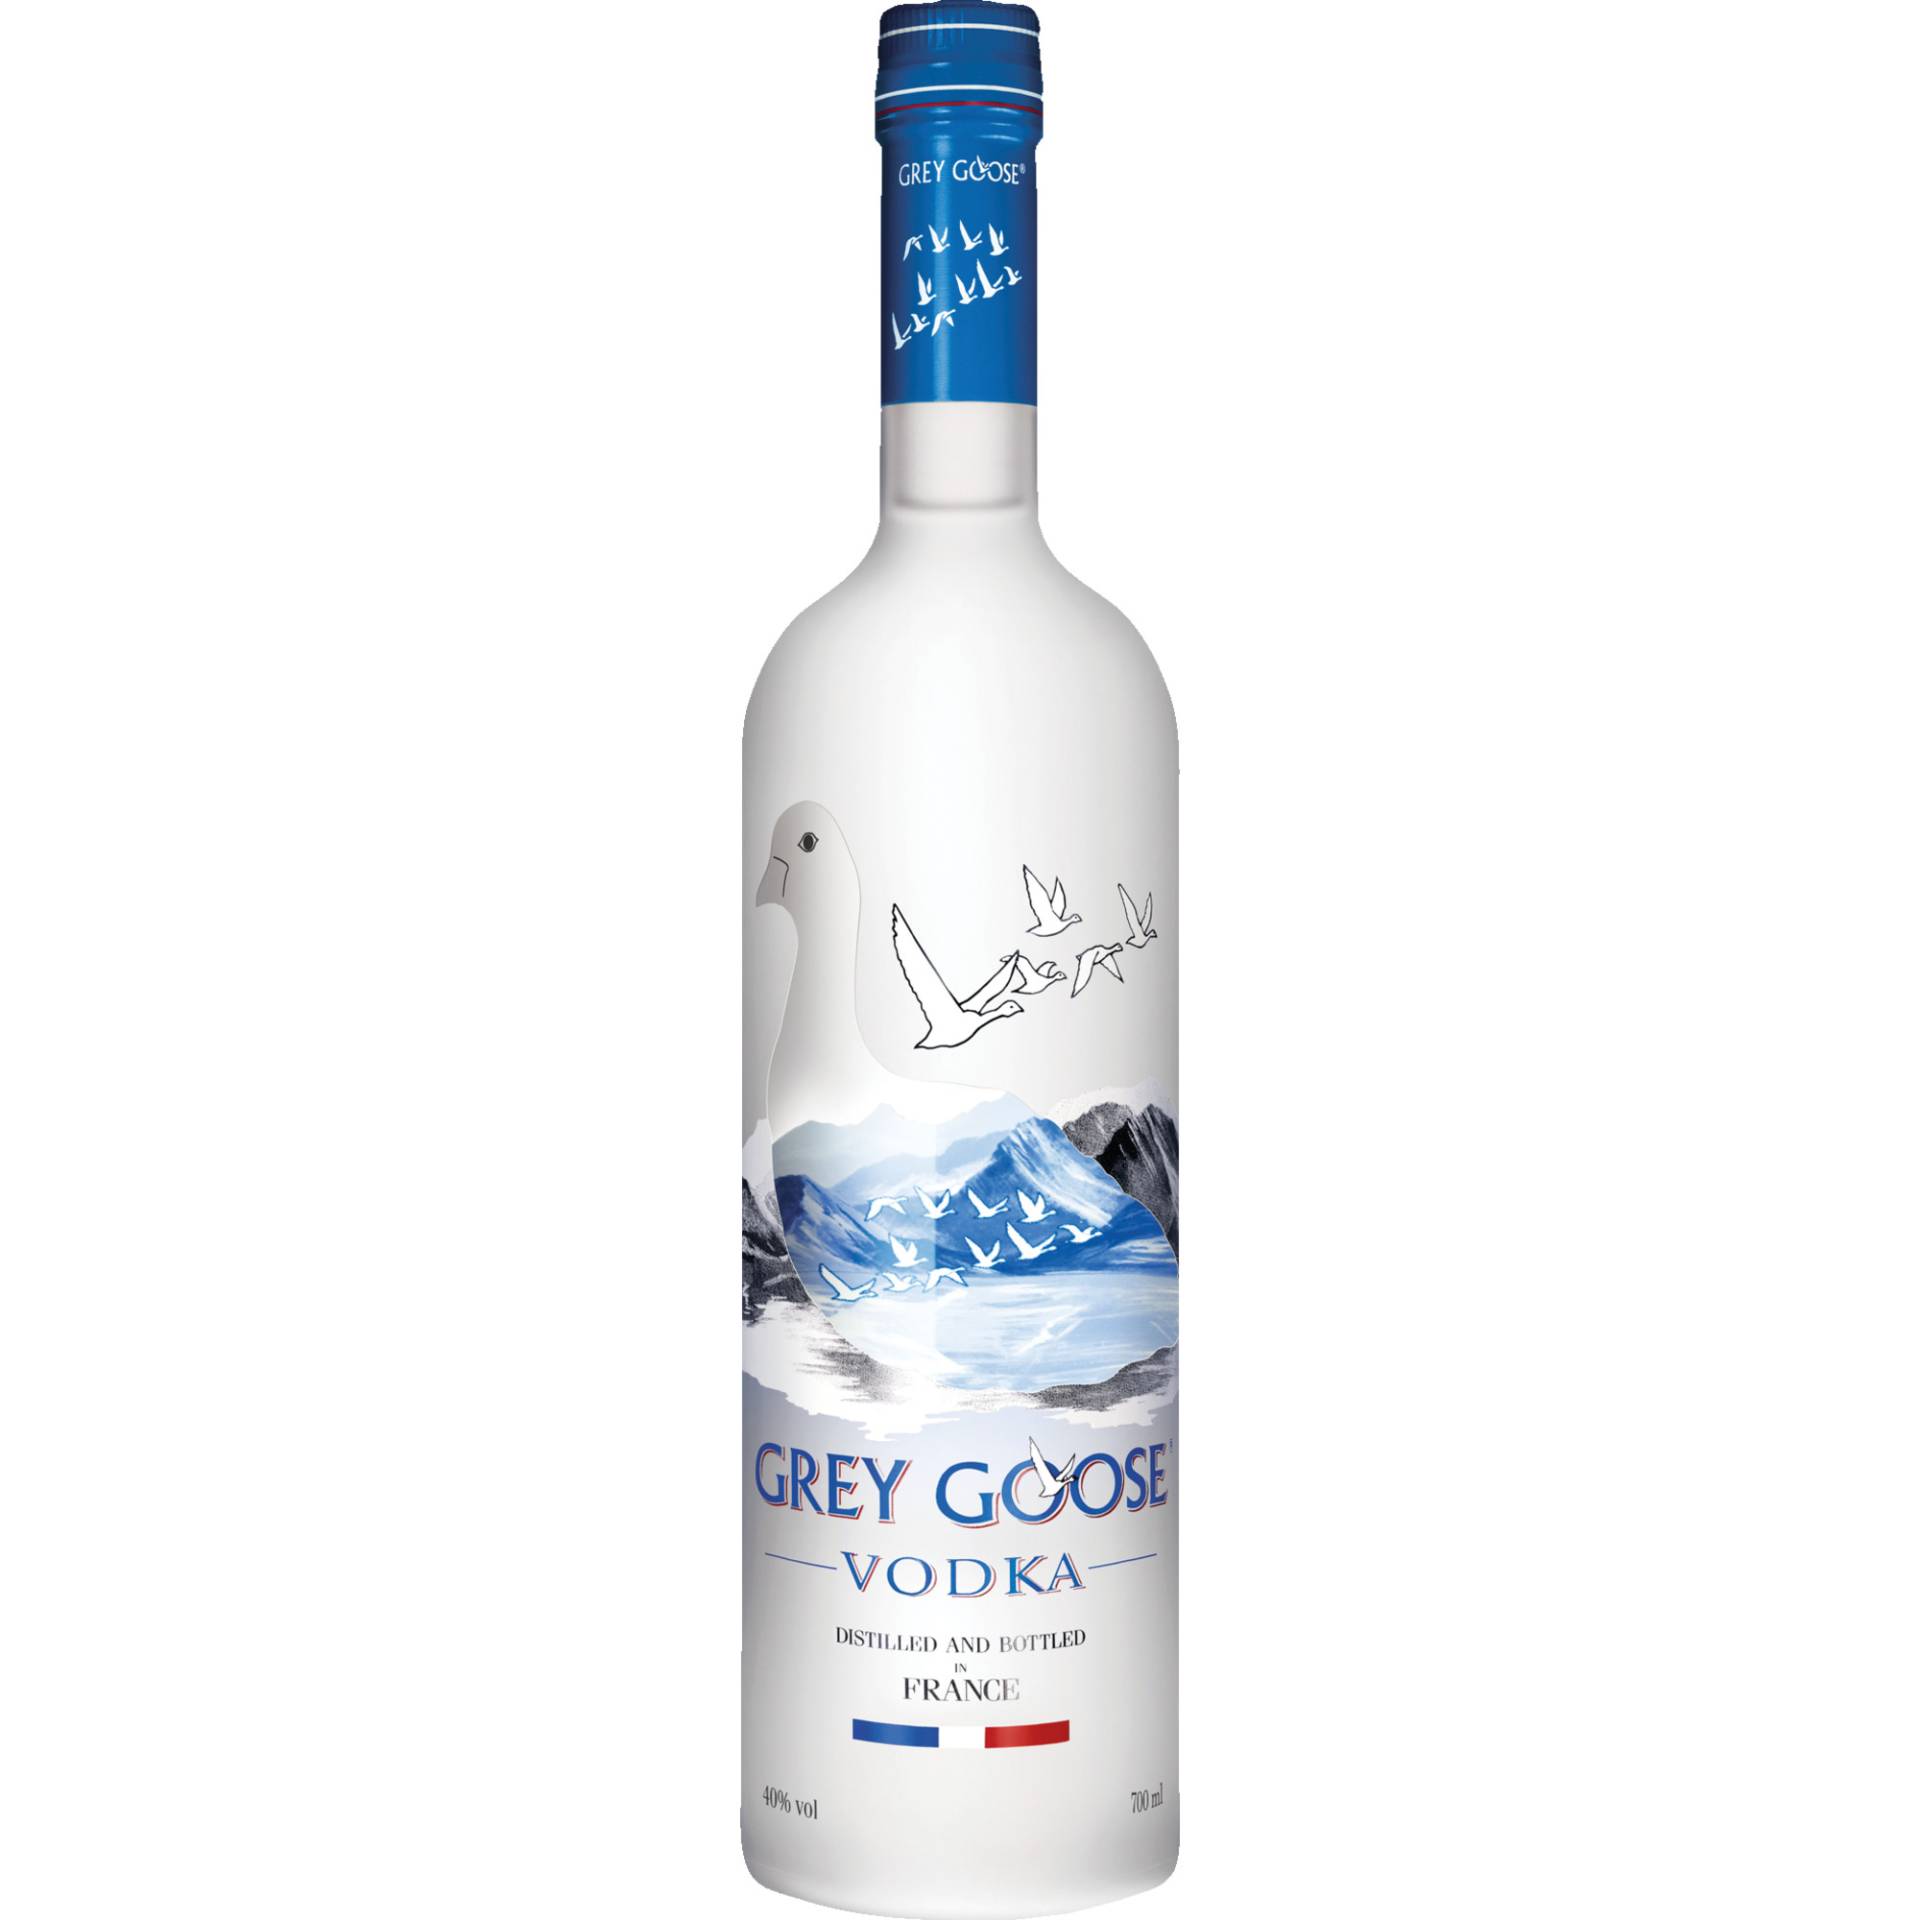 Grey Goose Original, 0,7l, 40% Vol., Wodka, Spirituosen von BACARDI GmbH , Hindenburgstr. 49 , D-22297 Hamburg